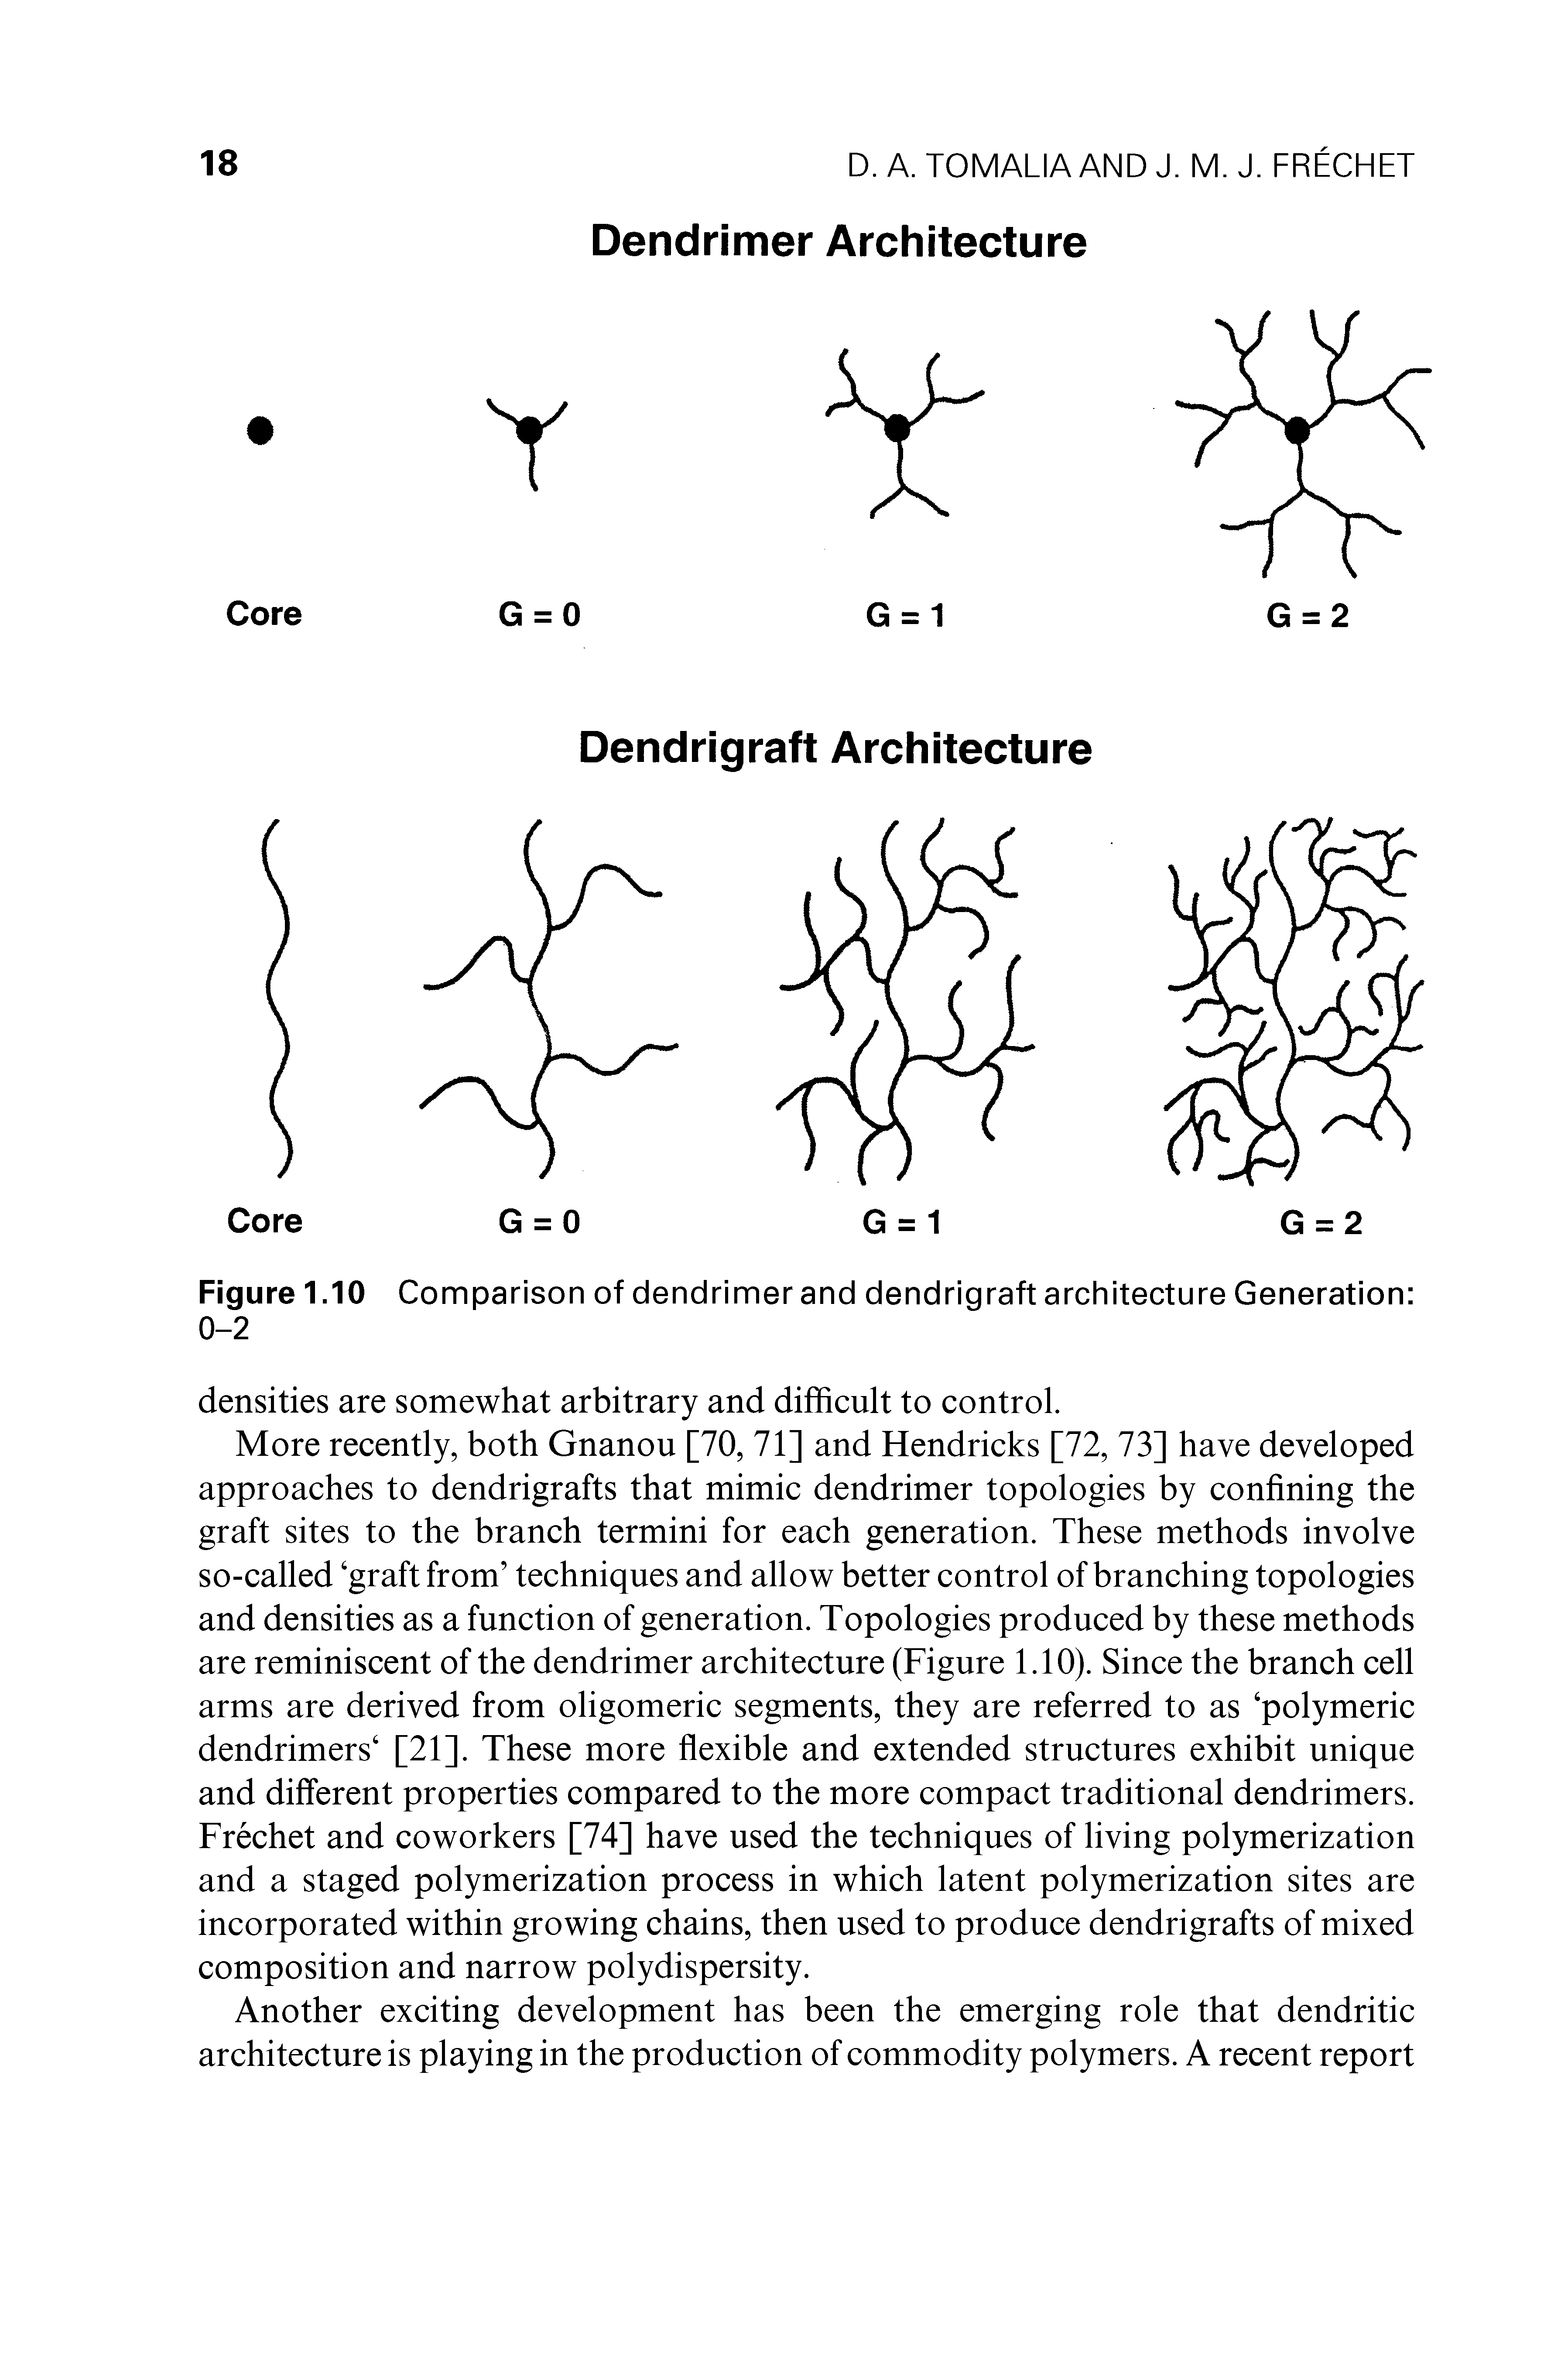 Figure 1.10 Comparison of dendrimer and dendrigraft architecture Generation 0-2...